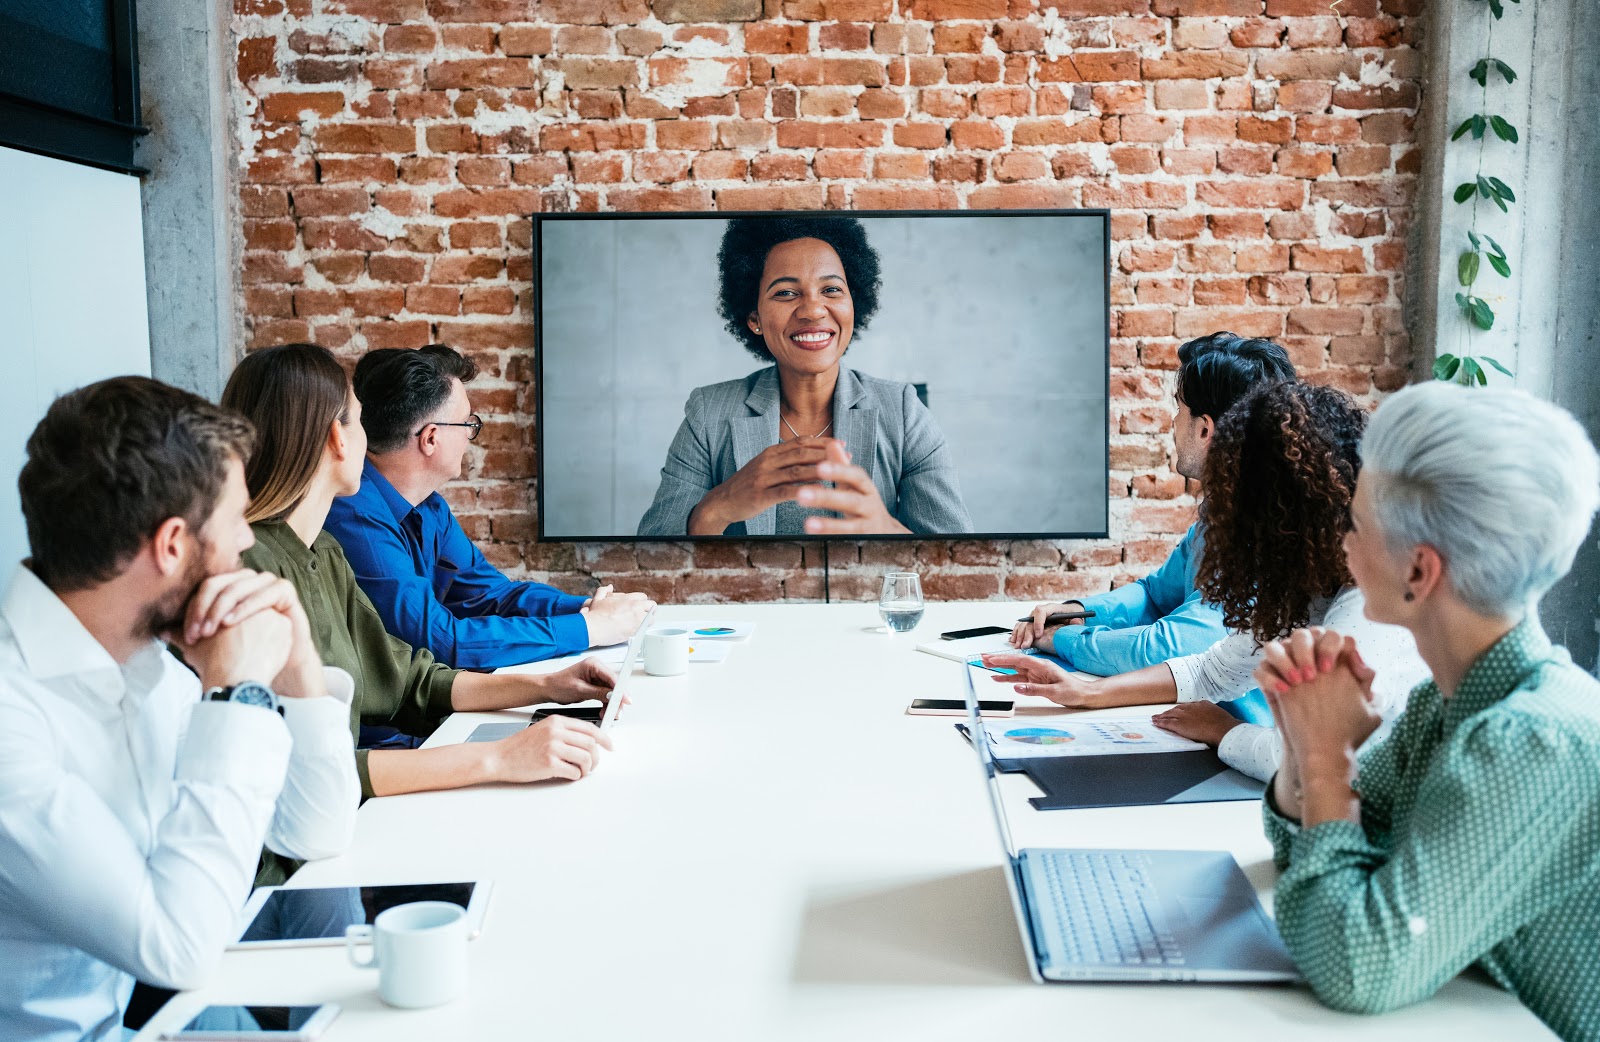 云视频会议大大提高了企业与外部人员沟通效率